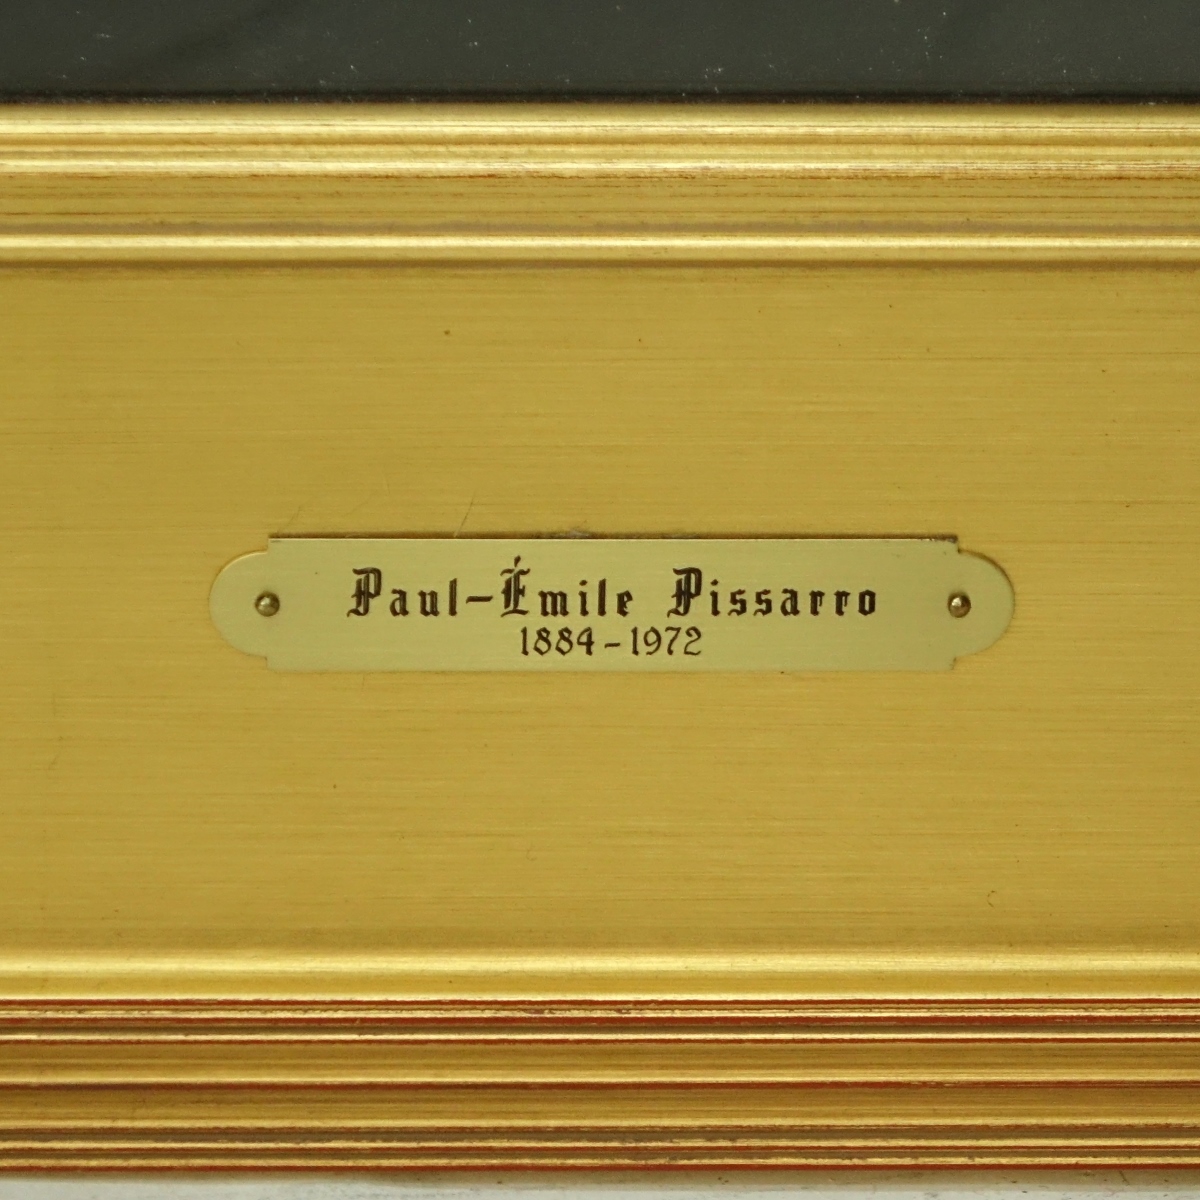 Paul Emile Pissarro (1884 - 1972)